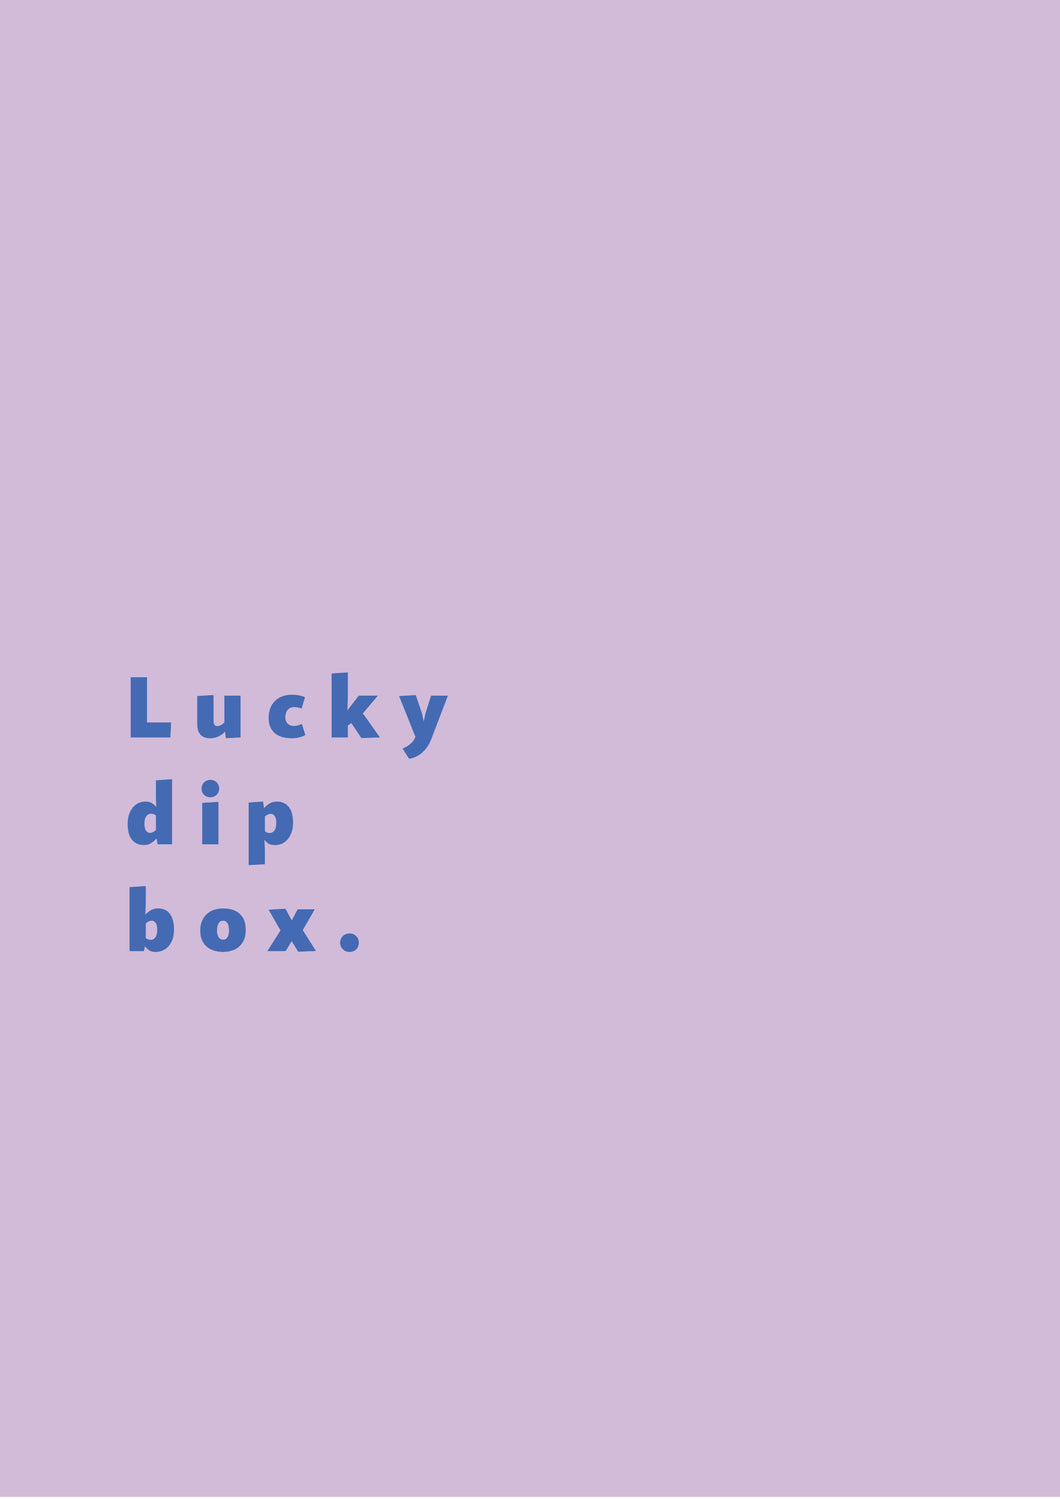 LUCKY DIP BOX